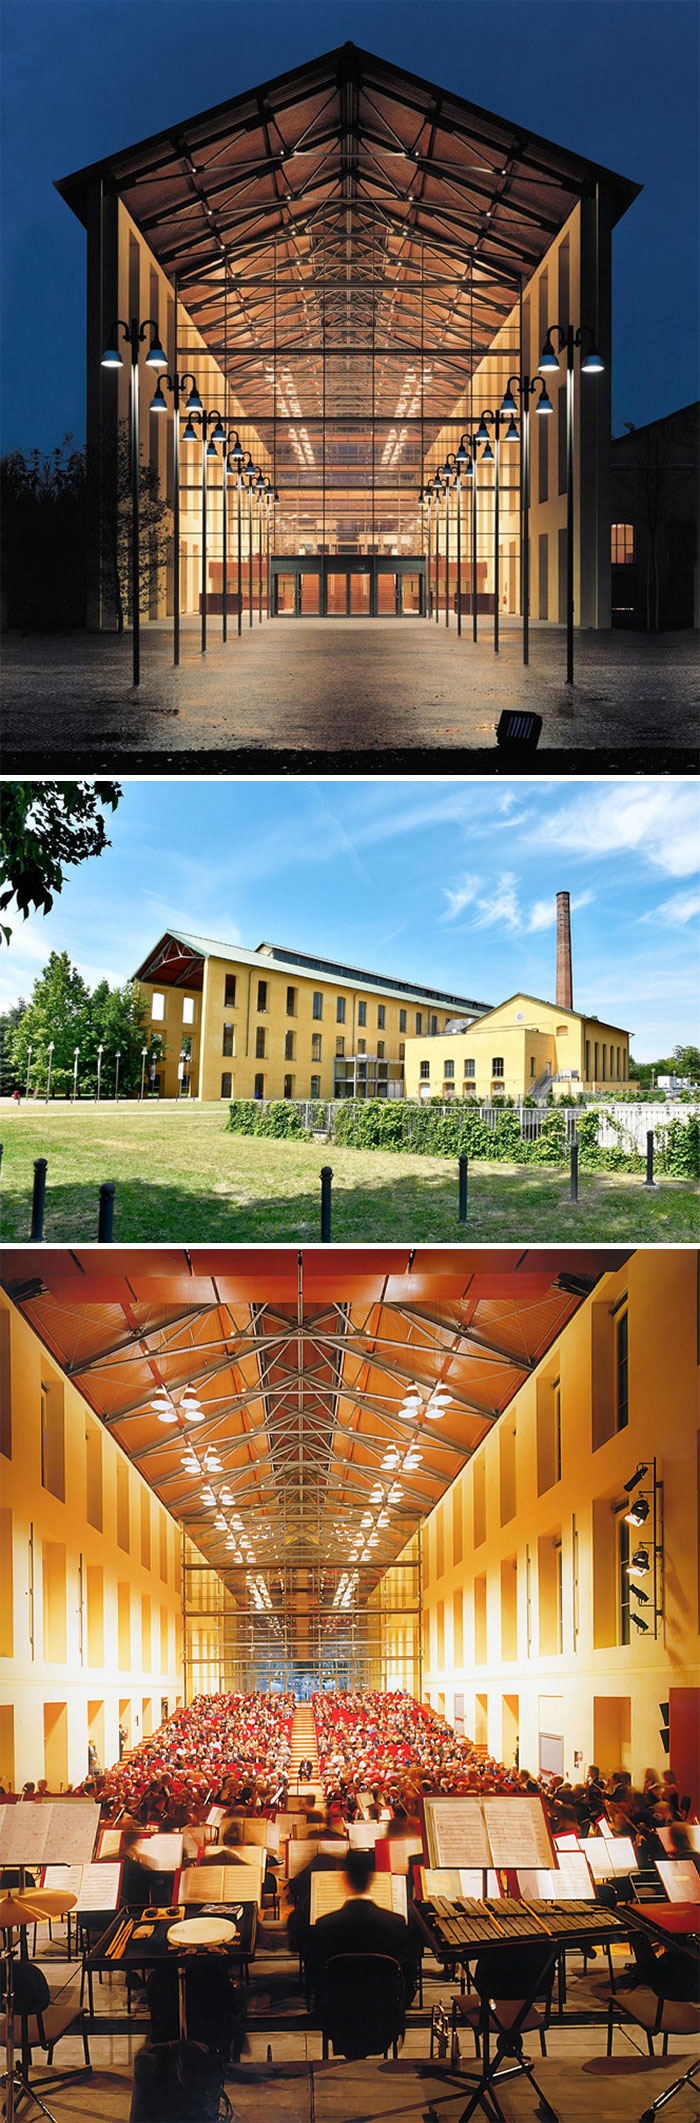 Auditorio Niccolò Paganini, Parma, Italia, una fábrica de azúcar abandonada convertida en sala de conciertos por Renzo Piano en 1996